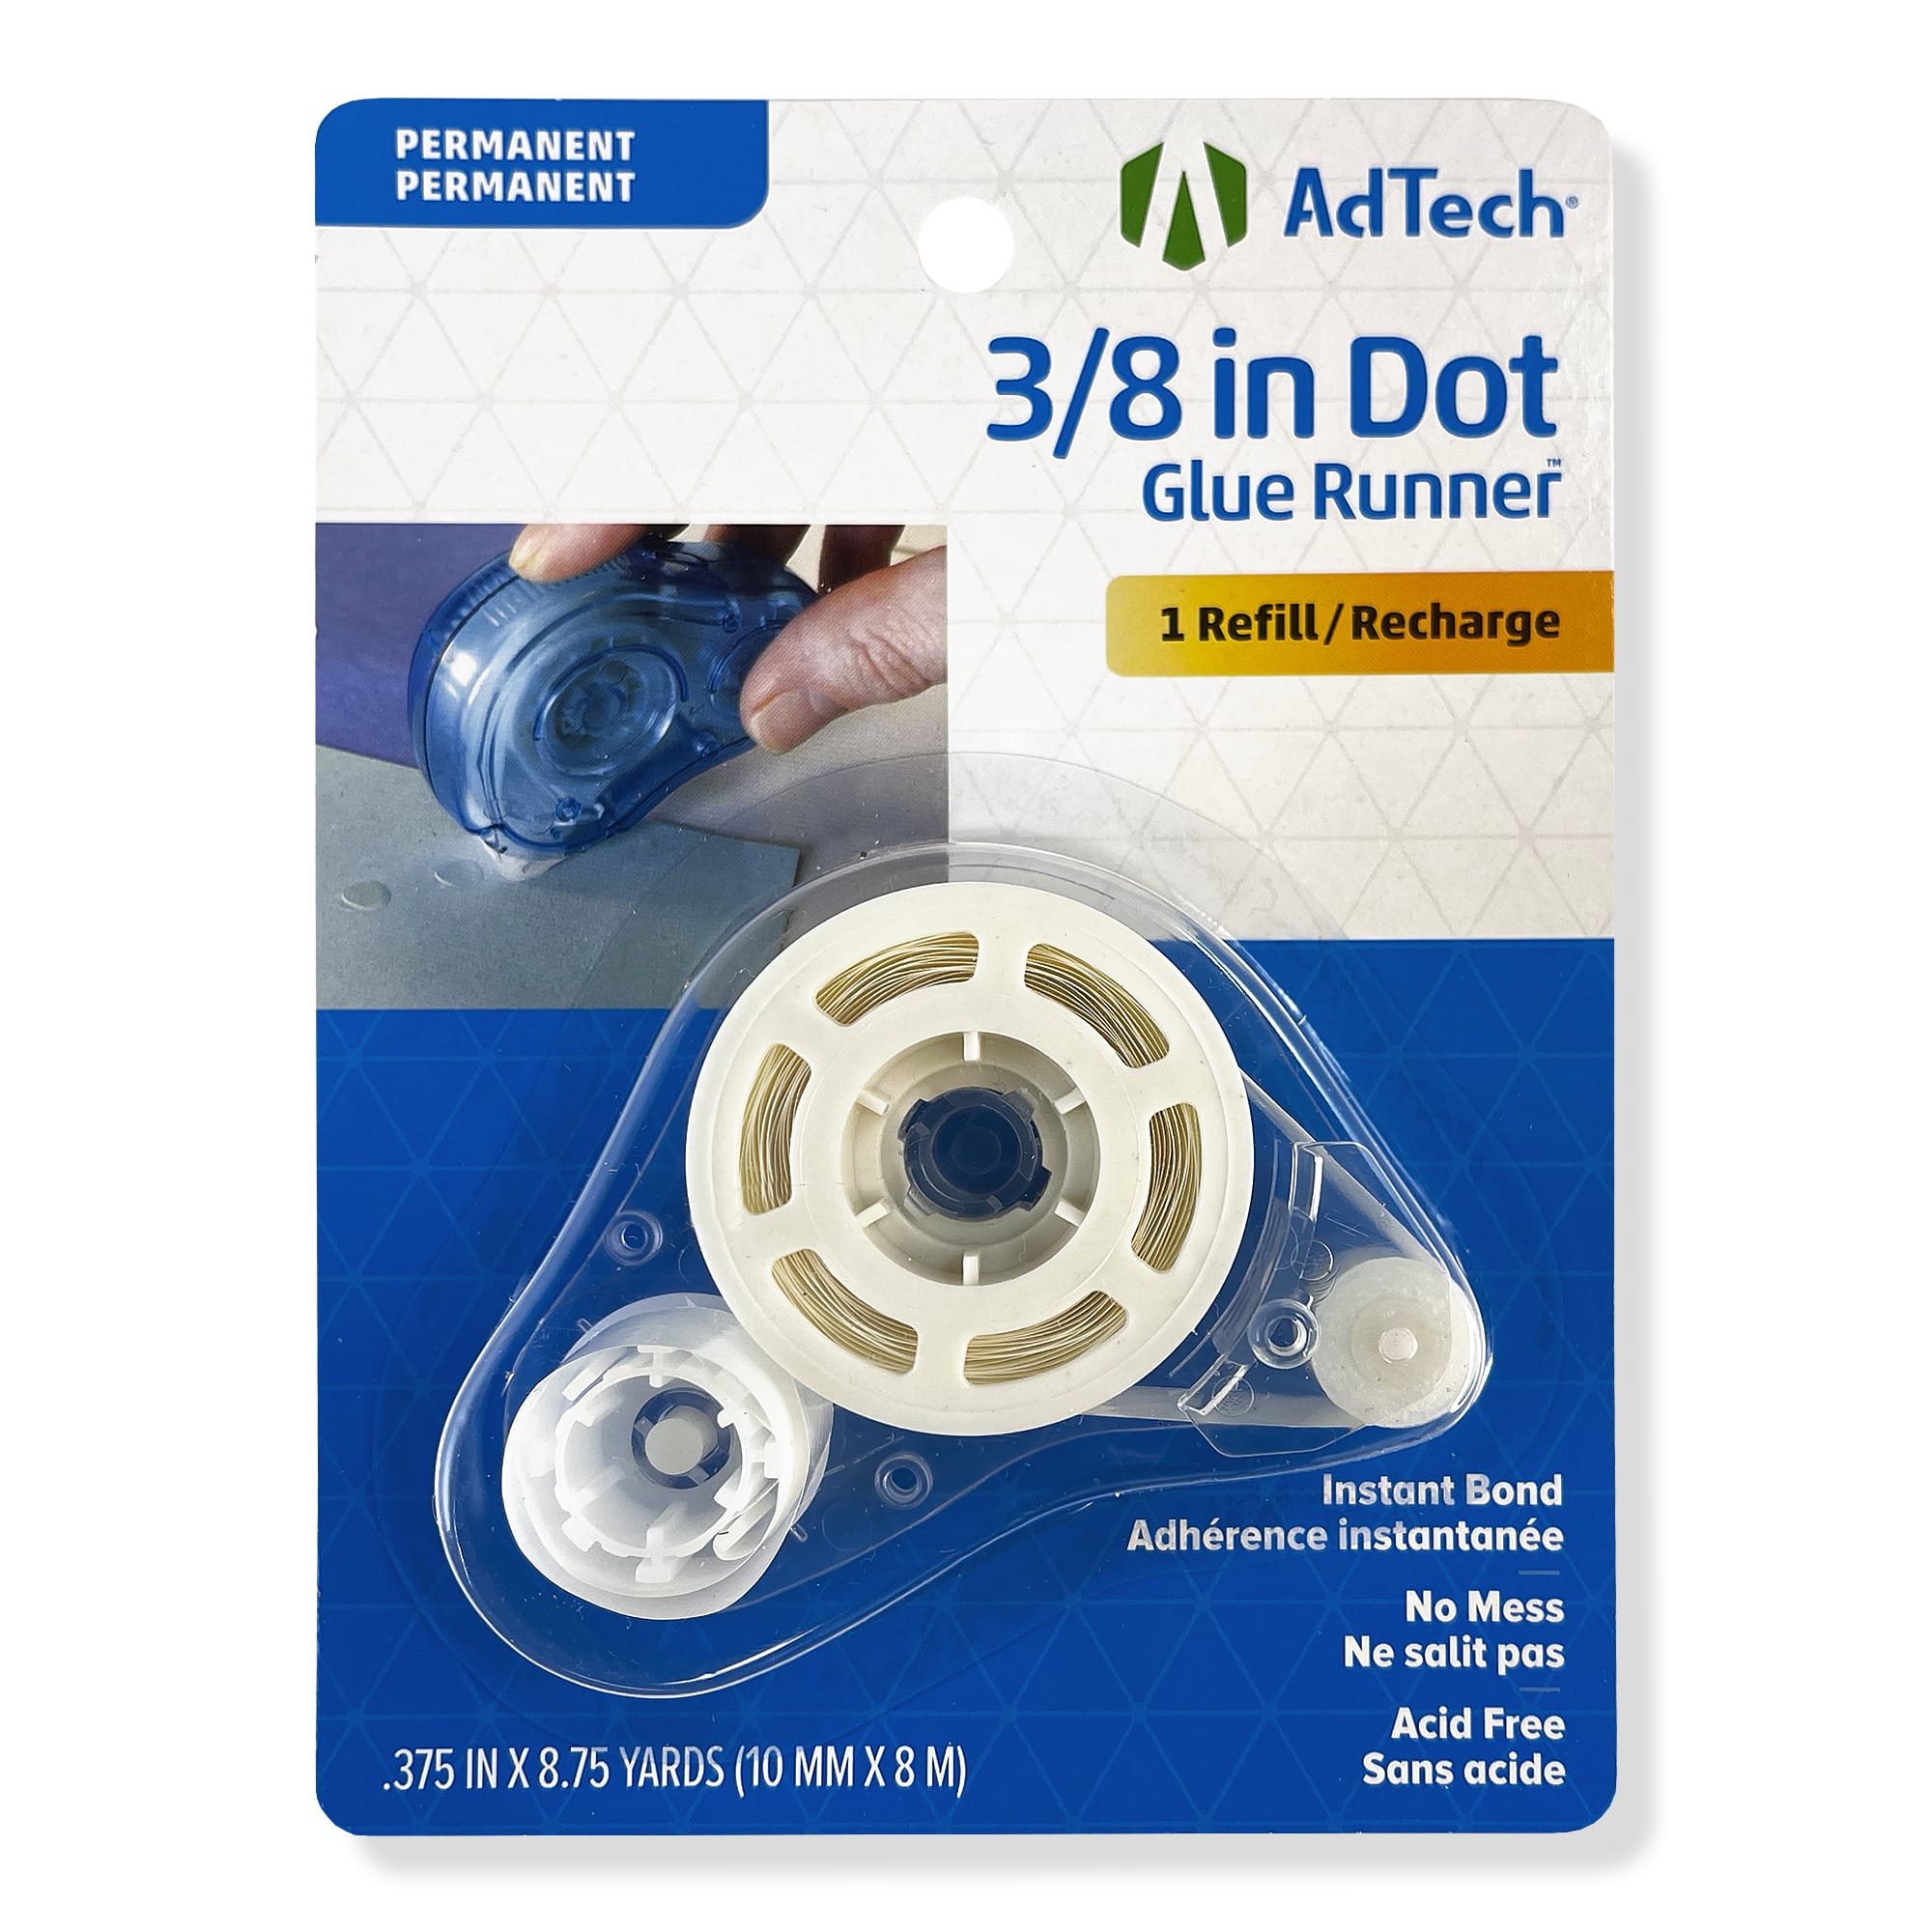 AdTech® Tape Glue Runner™ Permanent, Michaels